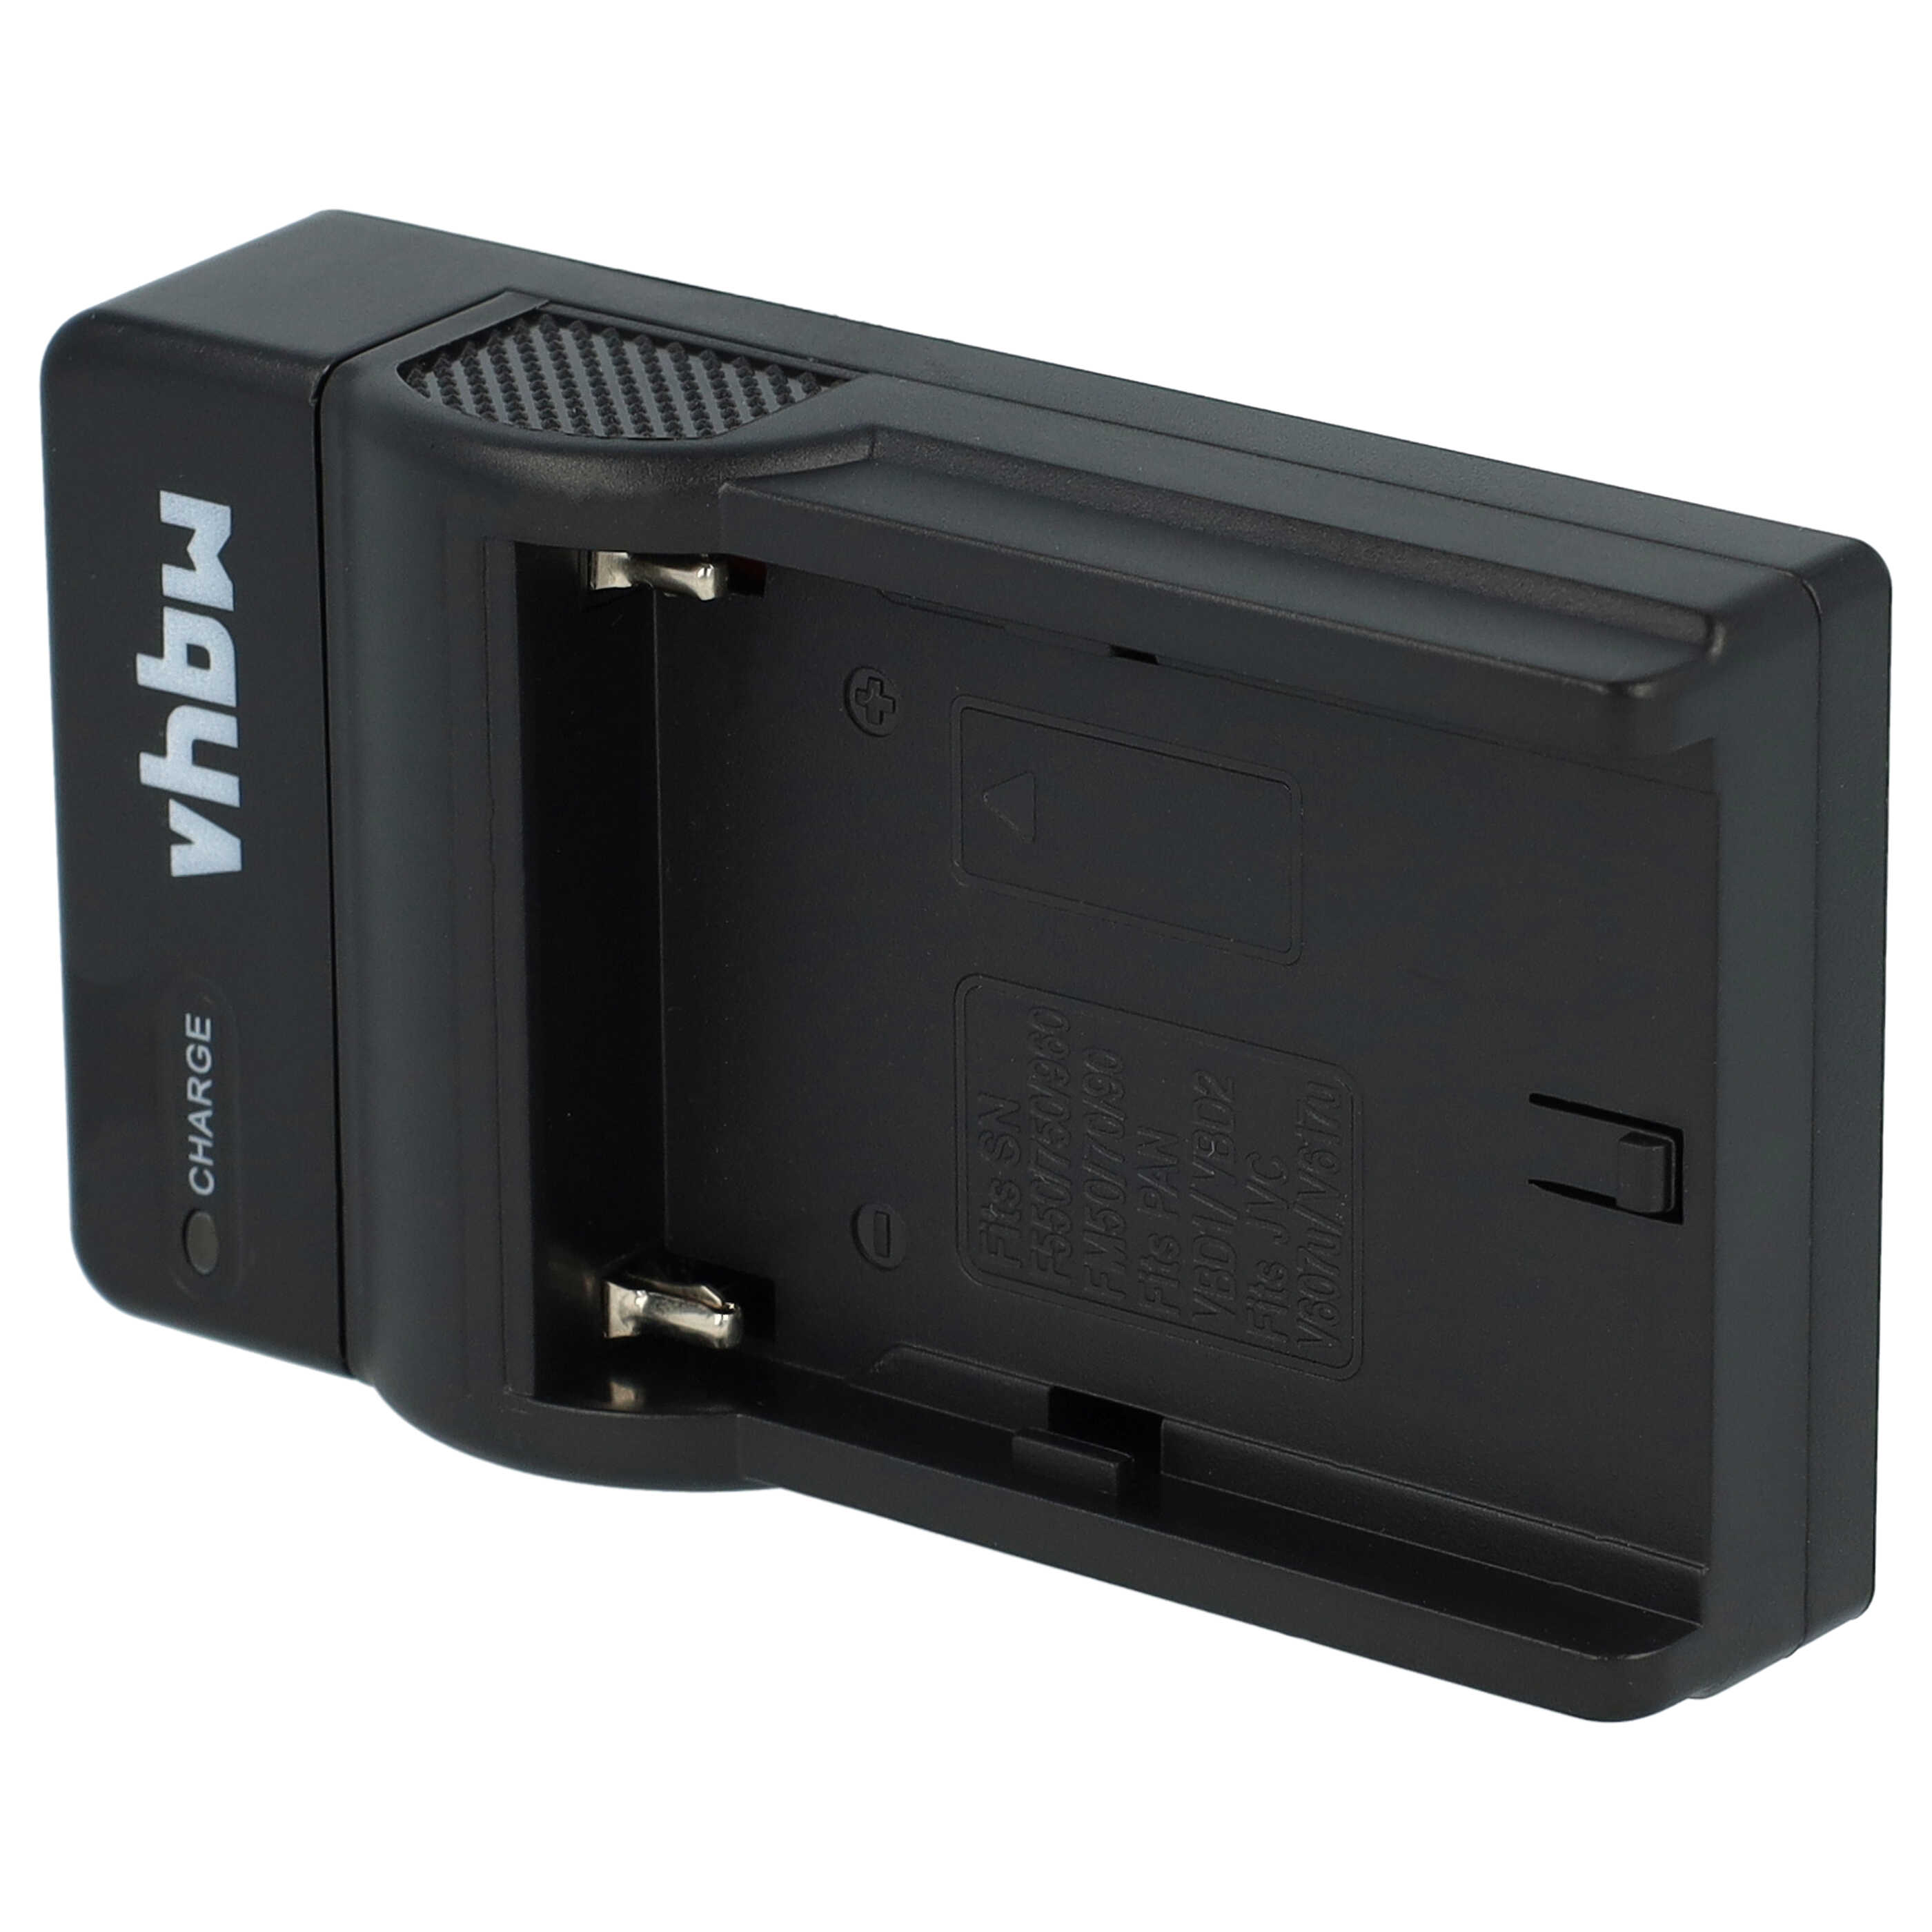 Akku Ladegerät passend für Hitachi Digitalkamera und weitere - 0,5 A, 8,4 V